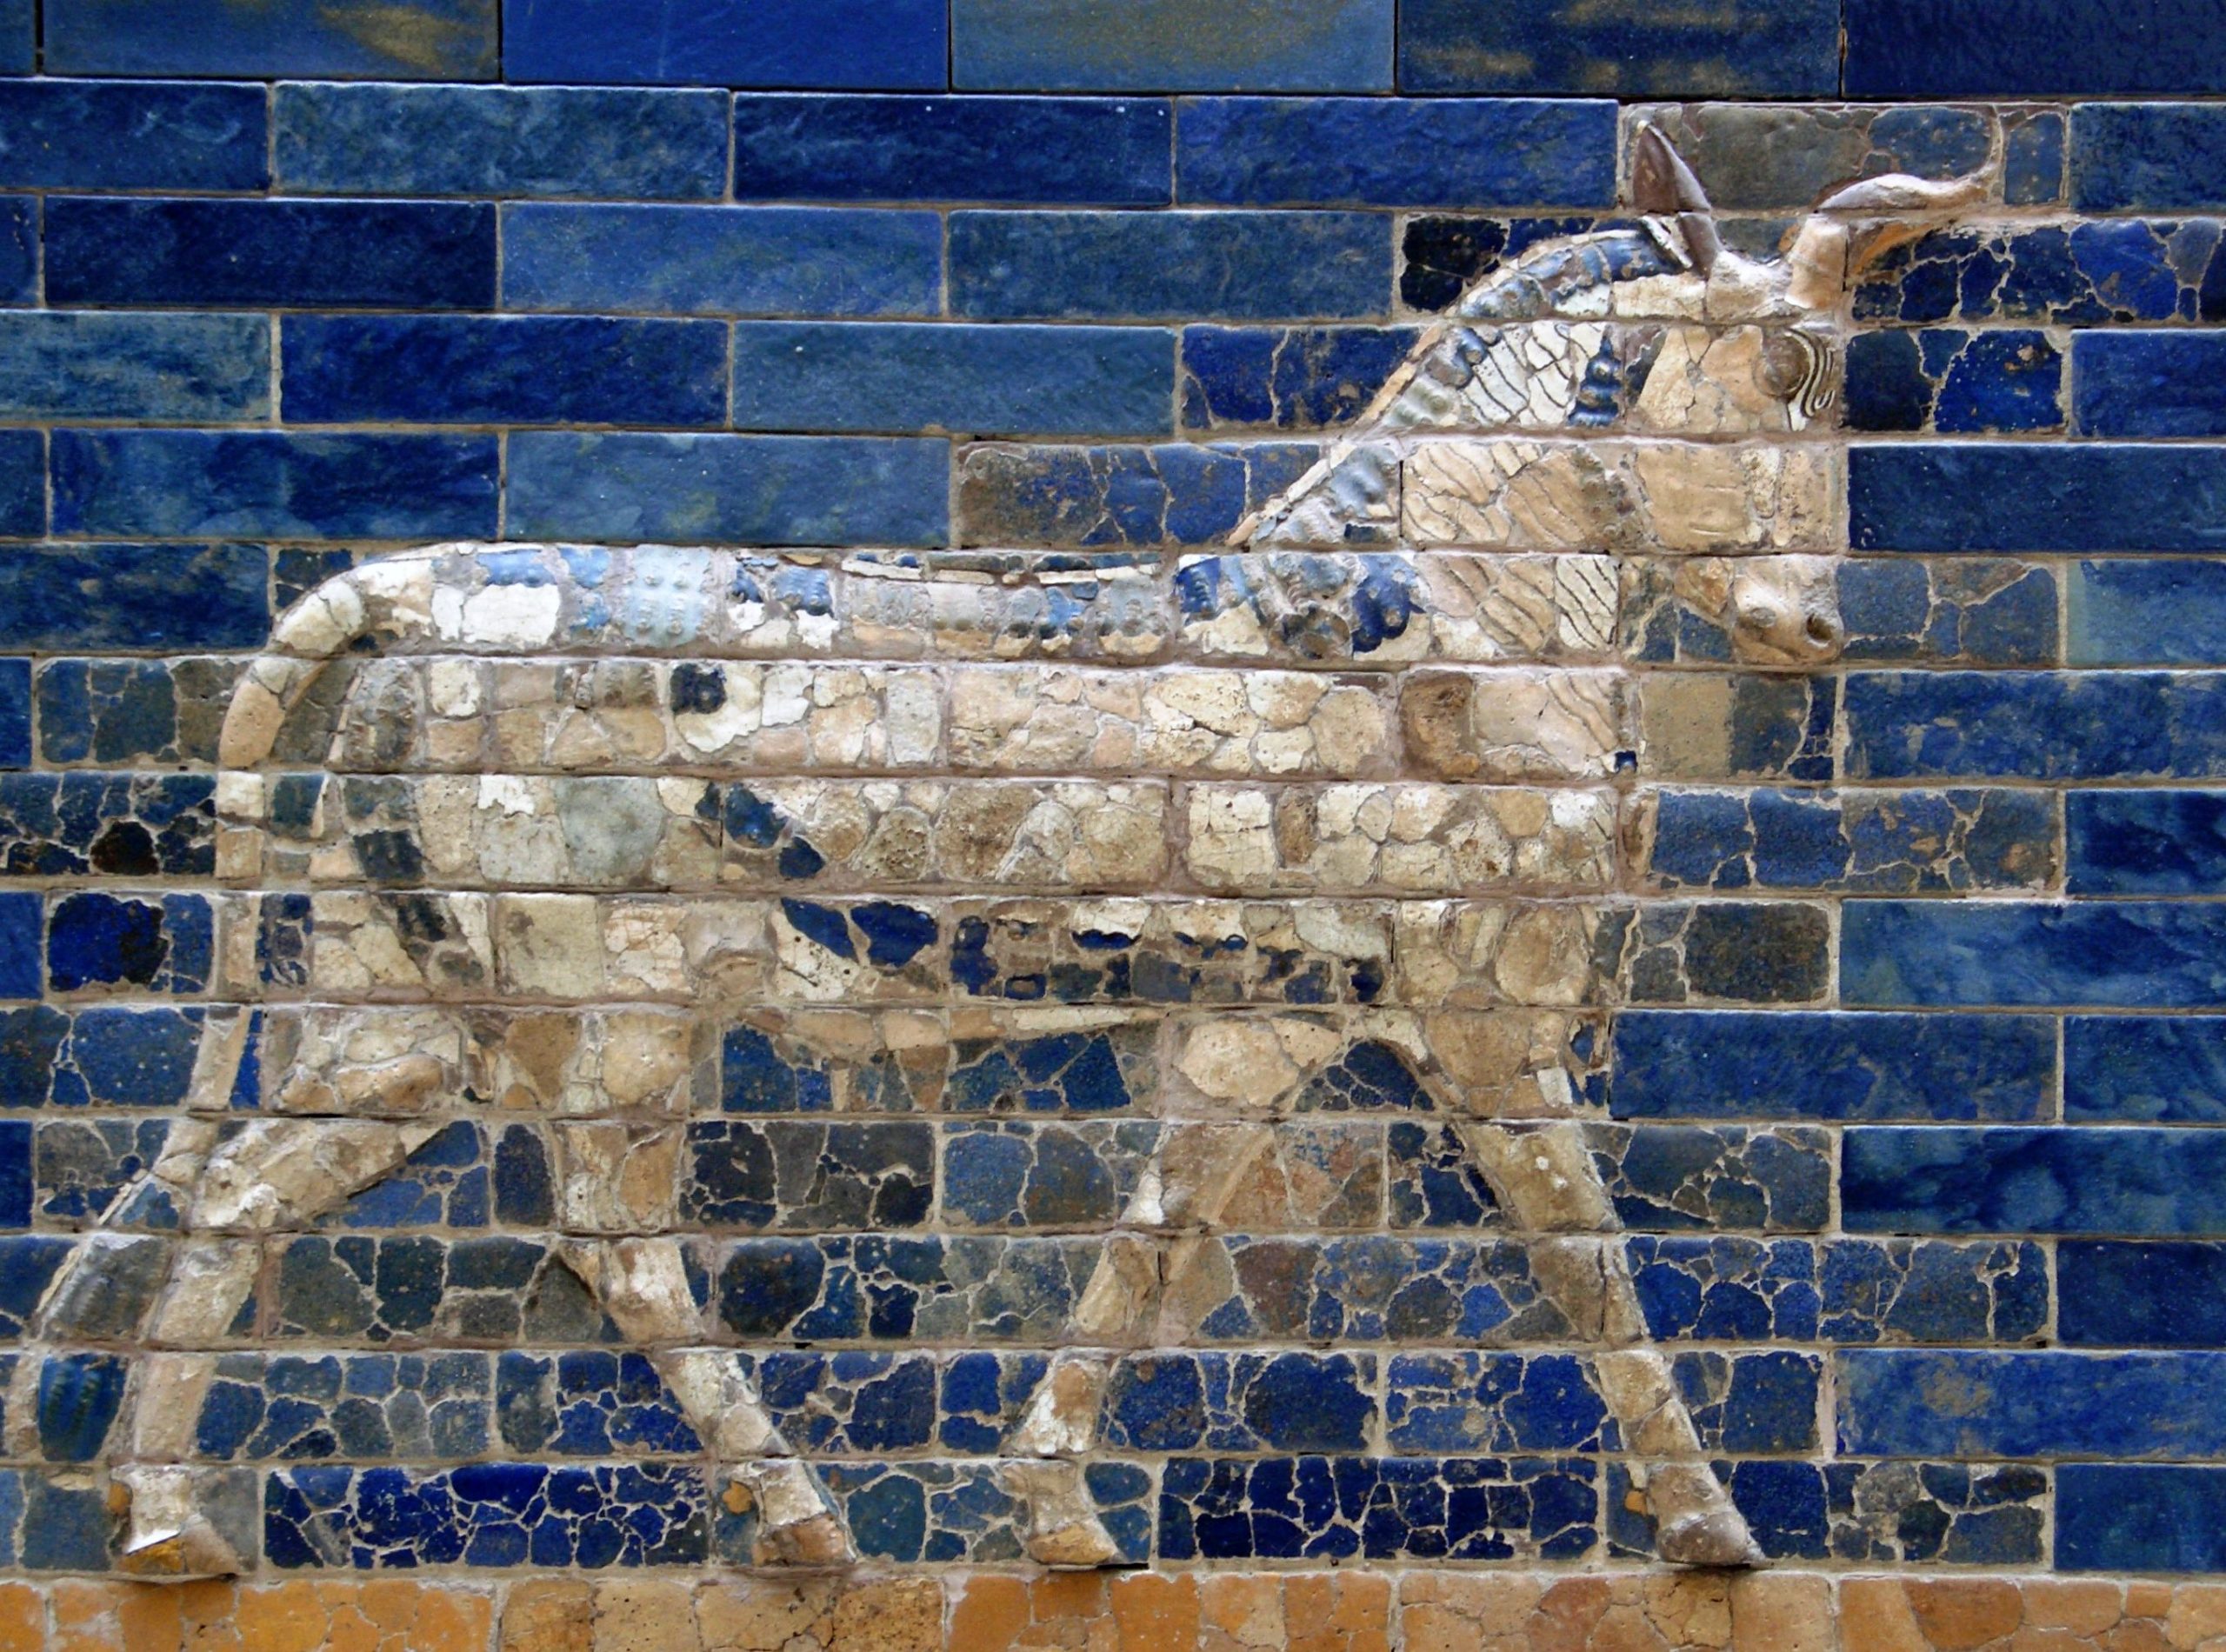 Darstellung eines Auerochsen auf Babylons Ischtar-Tor (6. Jahrhundert v. Chr.), heute im Pergamonmuseum, Berlin. Die Darstellung im Profil zeigt nur ein einziges Horn.